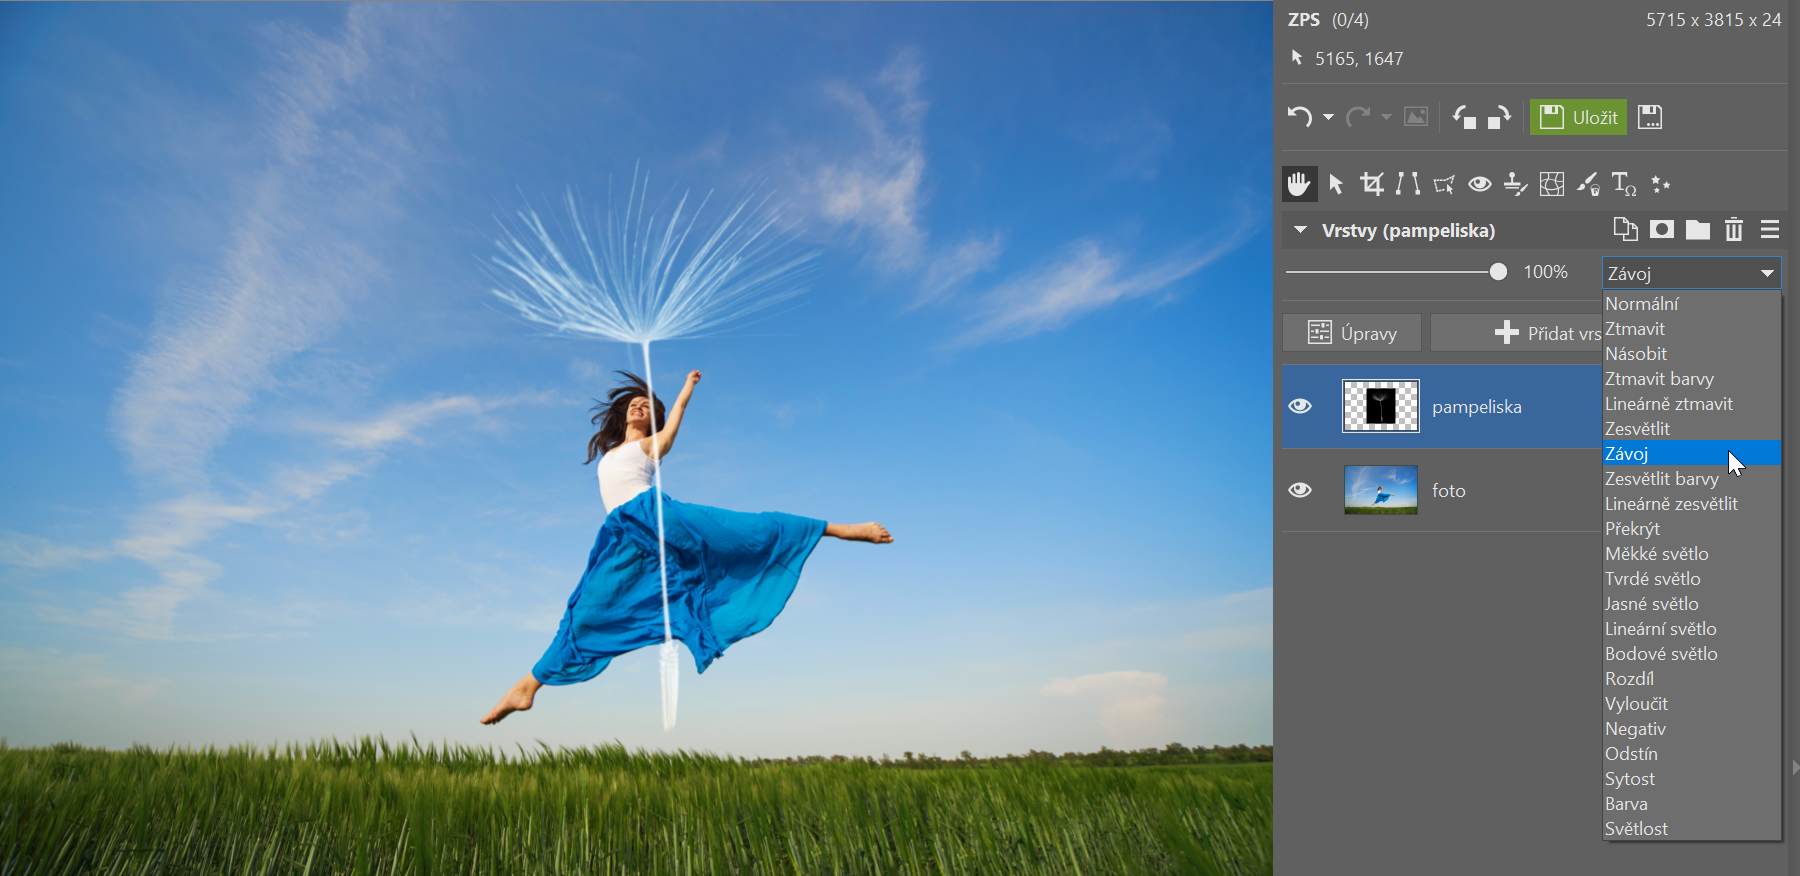 Veselá jarní fotomontáž: procvičte si práci s vrstvami